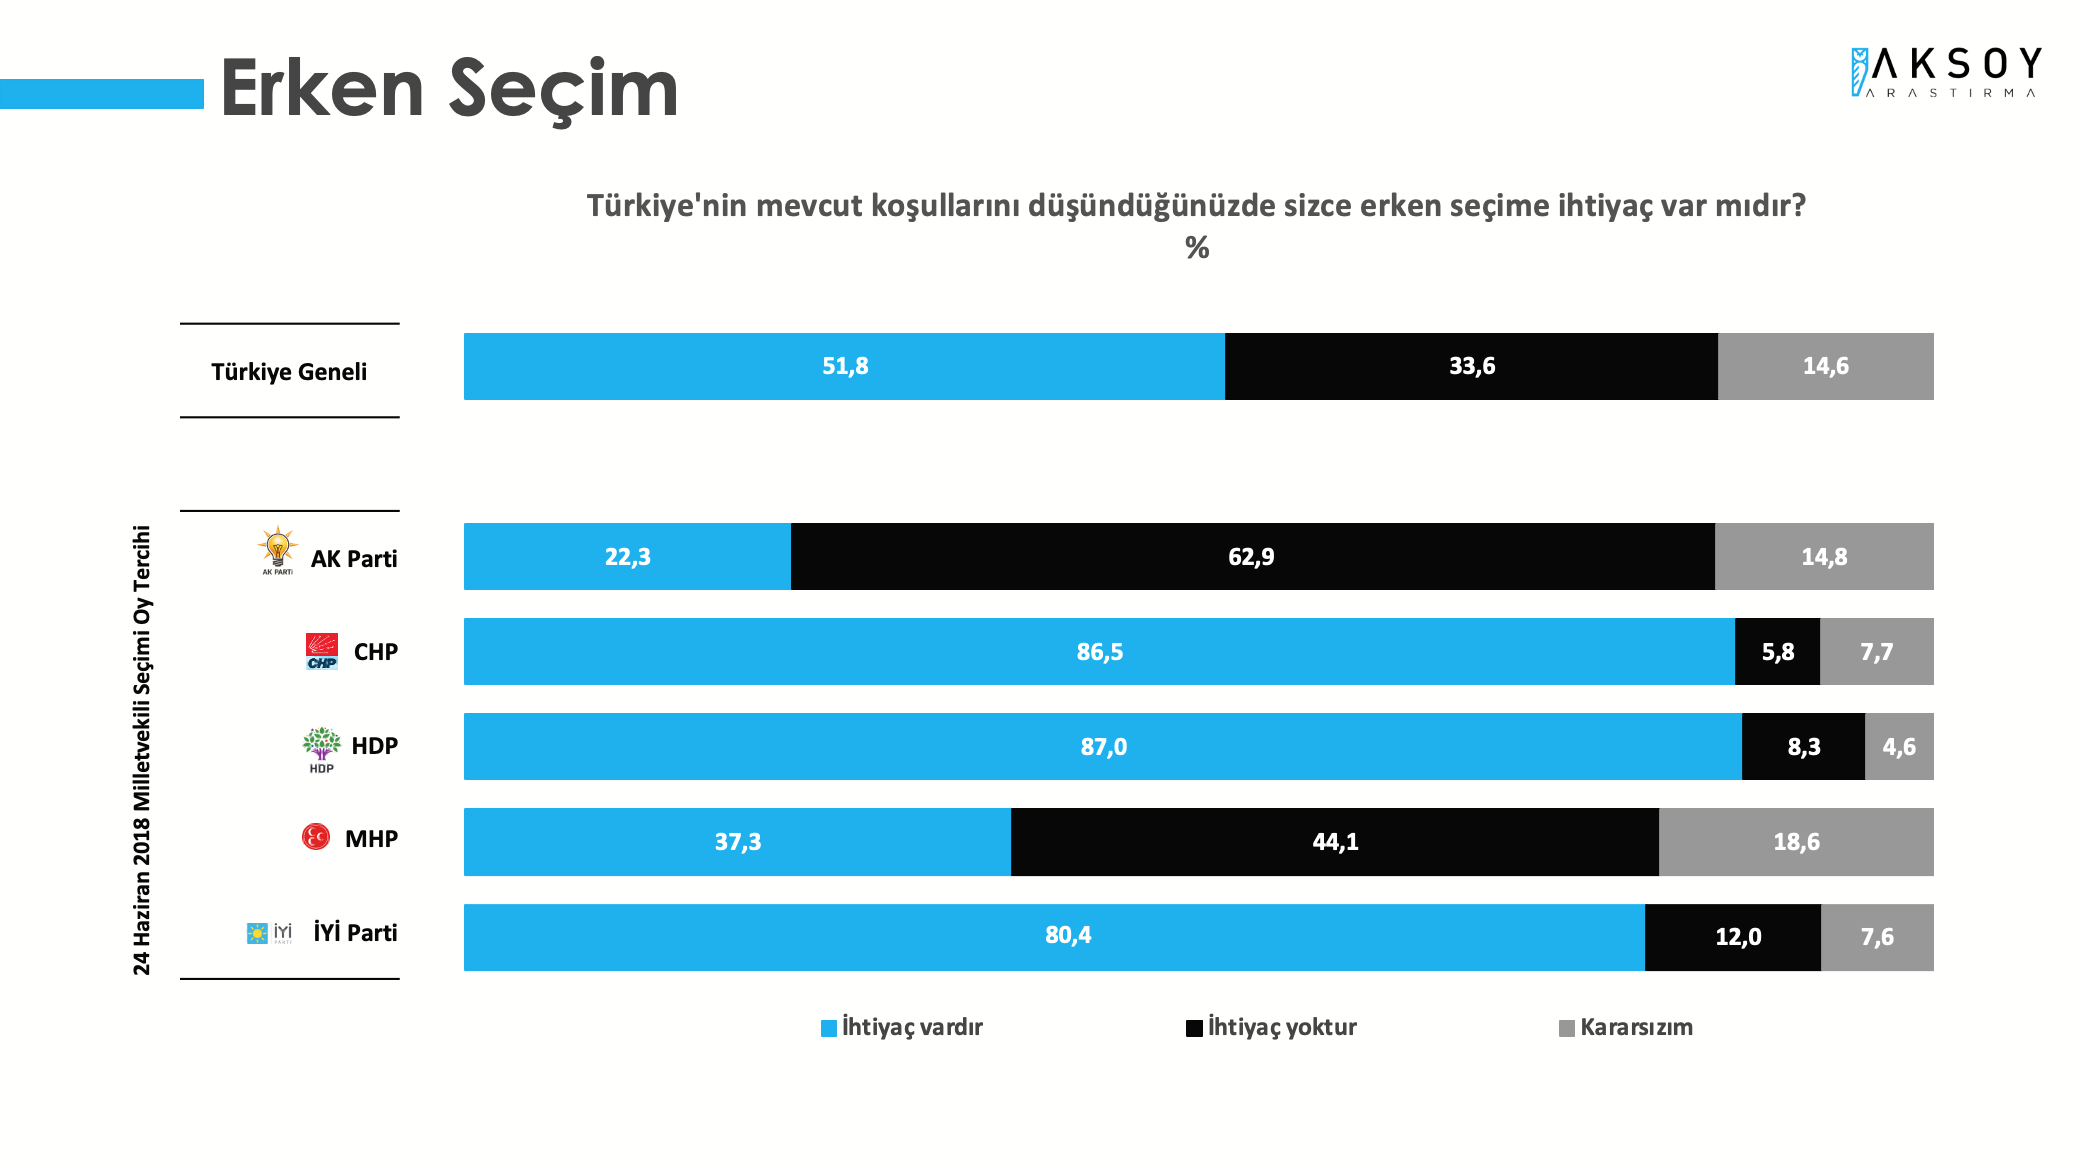 <p><strong>ERKEN SEÇİM TALEBİ</strong></p><p>Araştırmada, Türkiye'nin mevcut koşullarını düşündüğünüzde sizce erken seçime ihtiyaç var mıdır? sorusu soruldu. Katılımcıların yüzde 51,8’i ihtiyaç var derken, yüzde 33,6’ı ihtiyaç olmadığını belirtti. Katılımcıların yüzde 14,6’sı ise kararsız olduğu yanıtını verdi.</p>